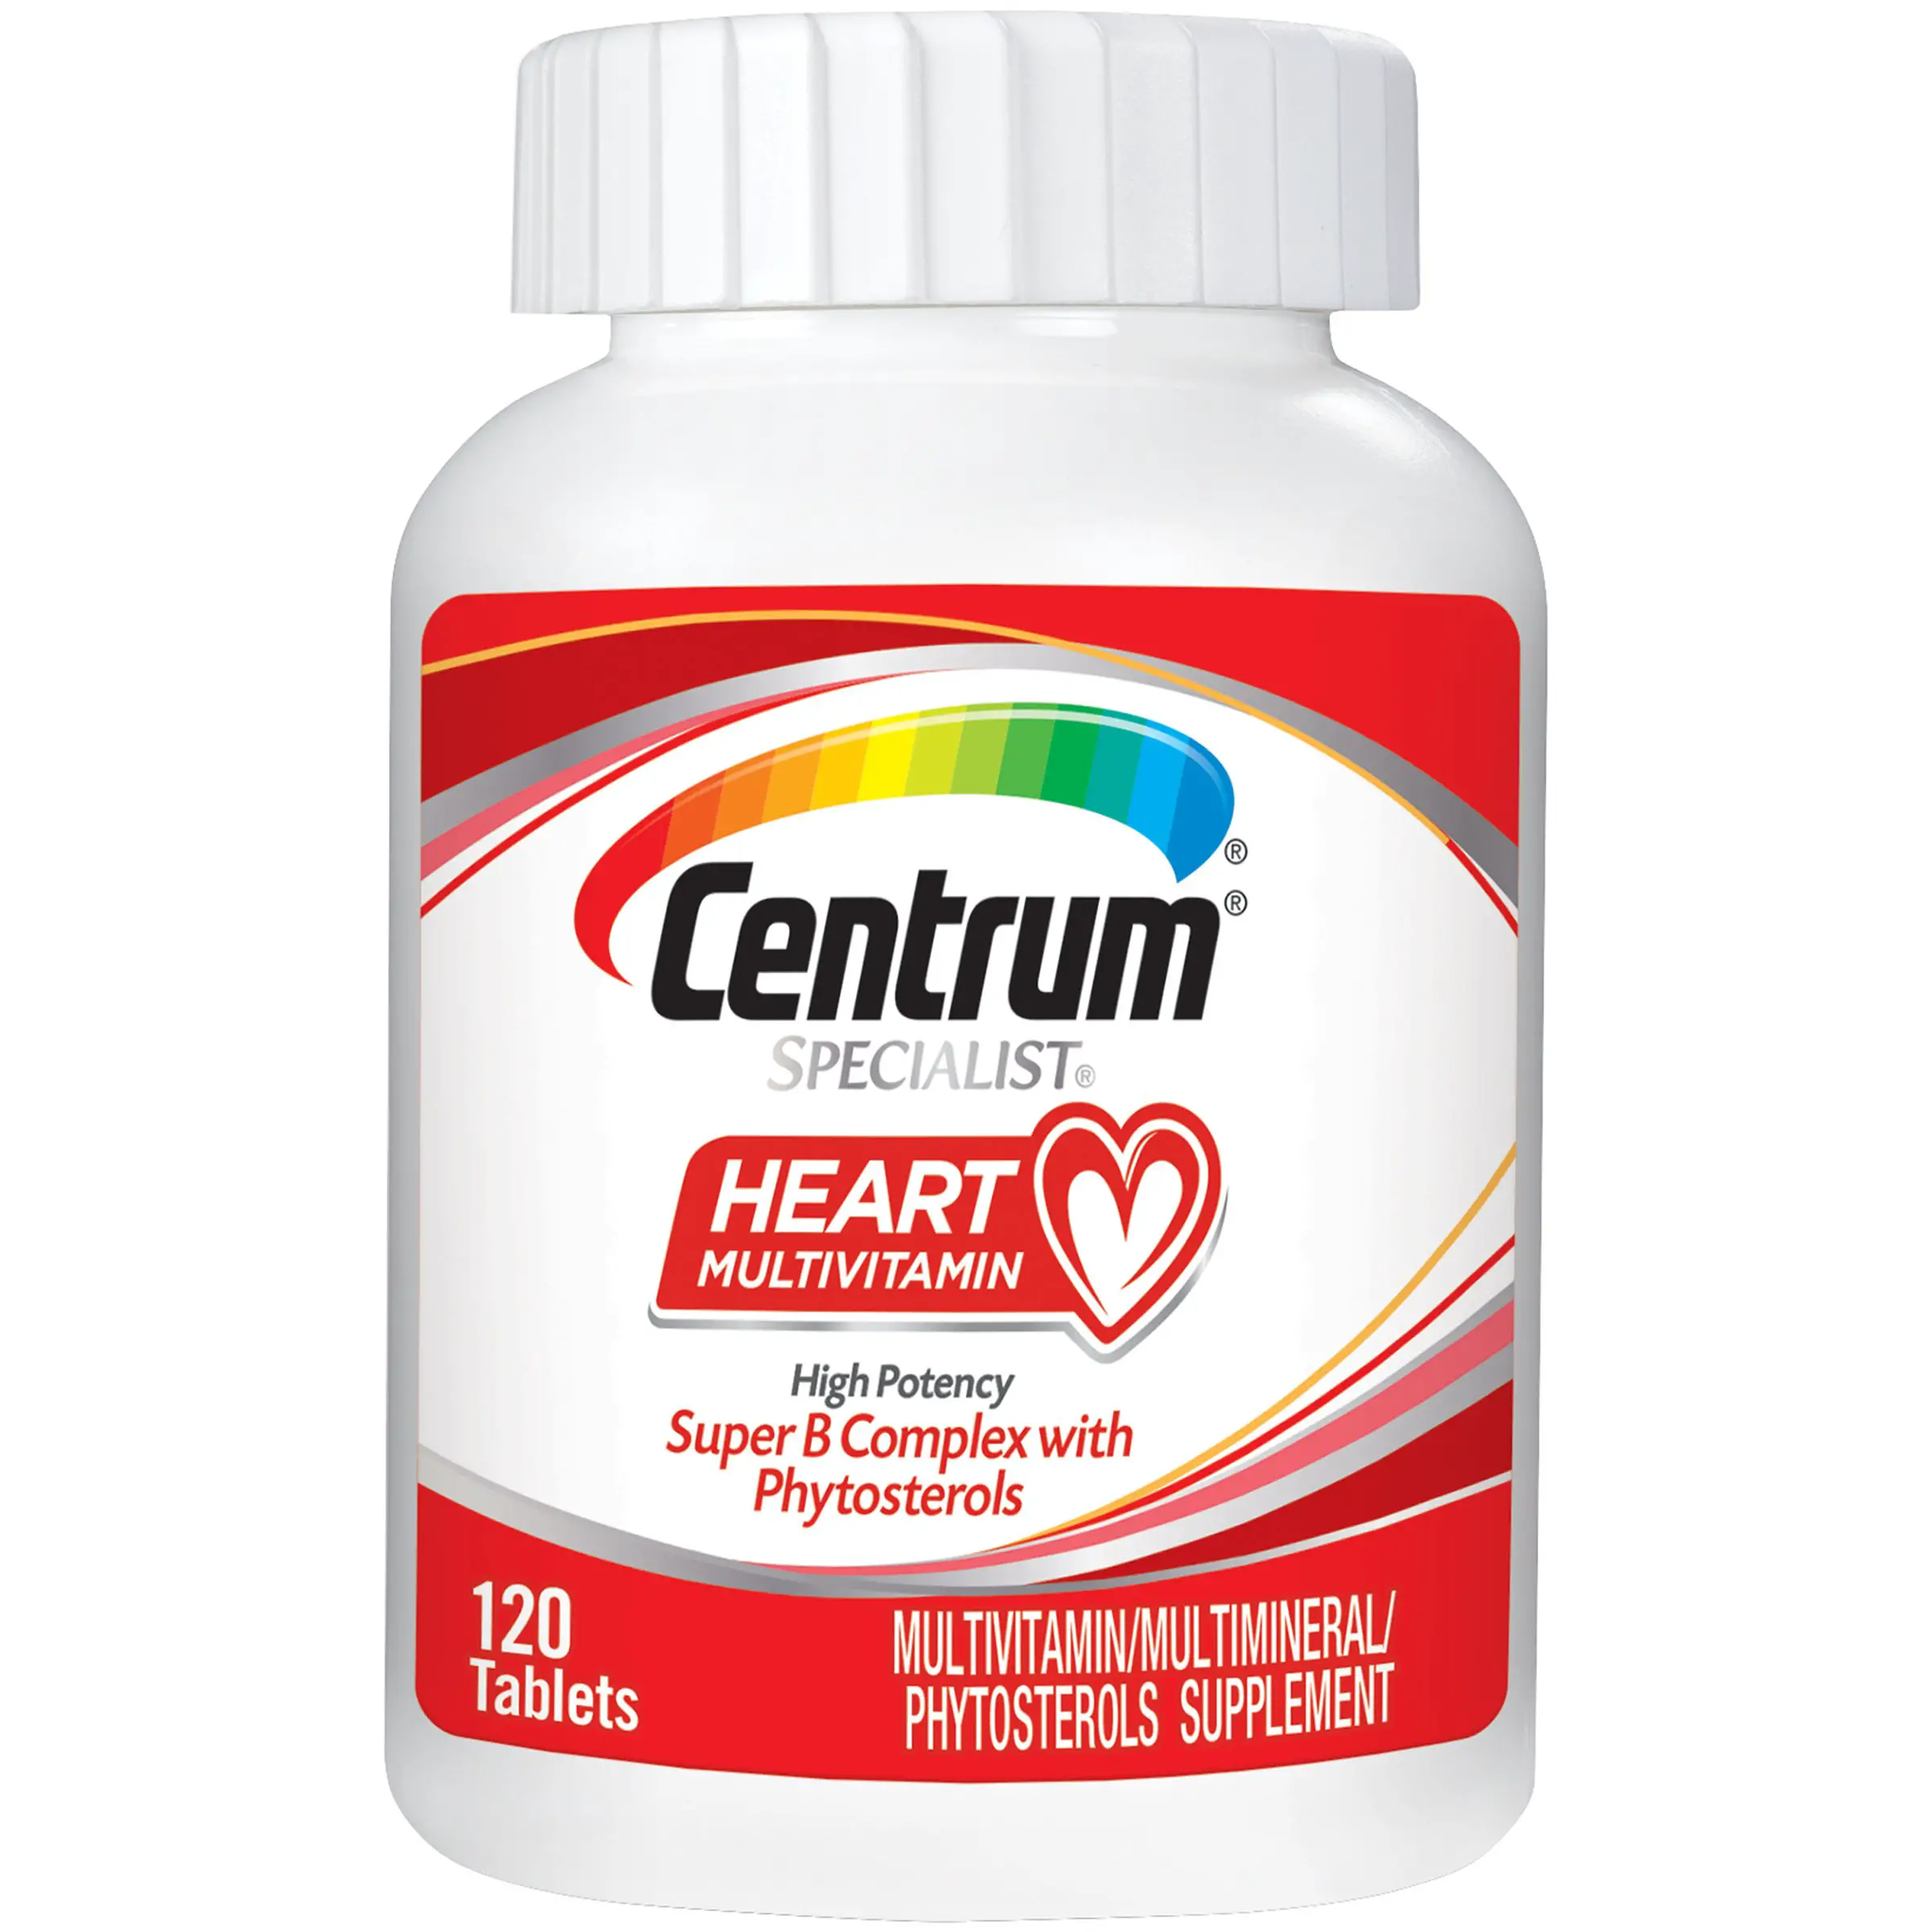 Centrum Specialist Heart Health Vitamins, Multivitamin/Multimineral ...